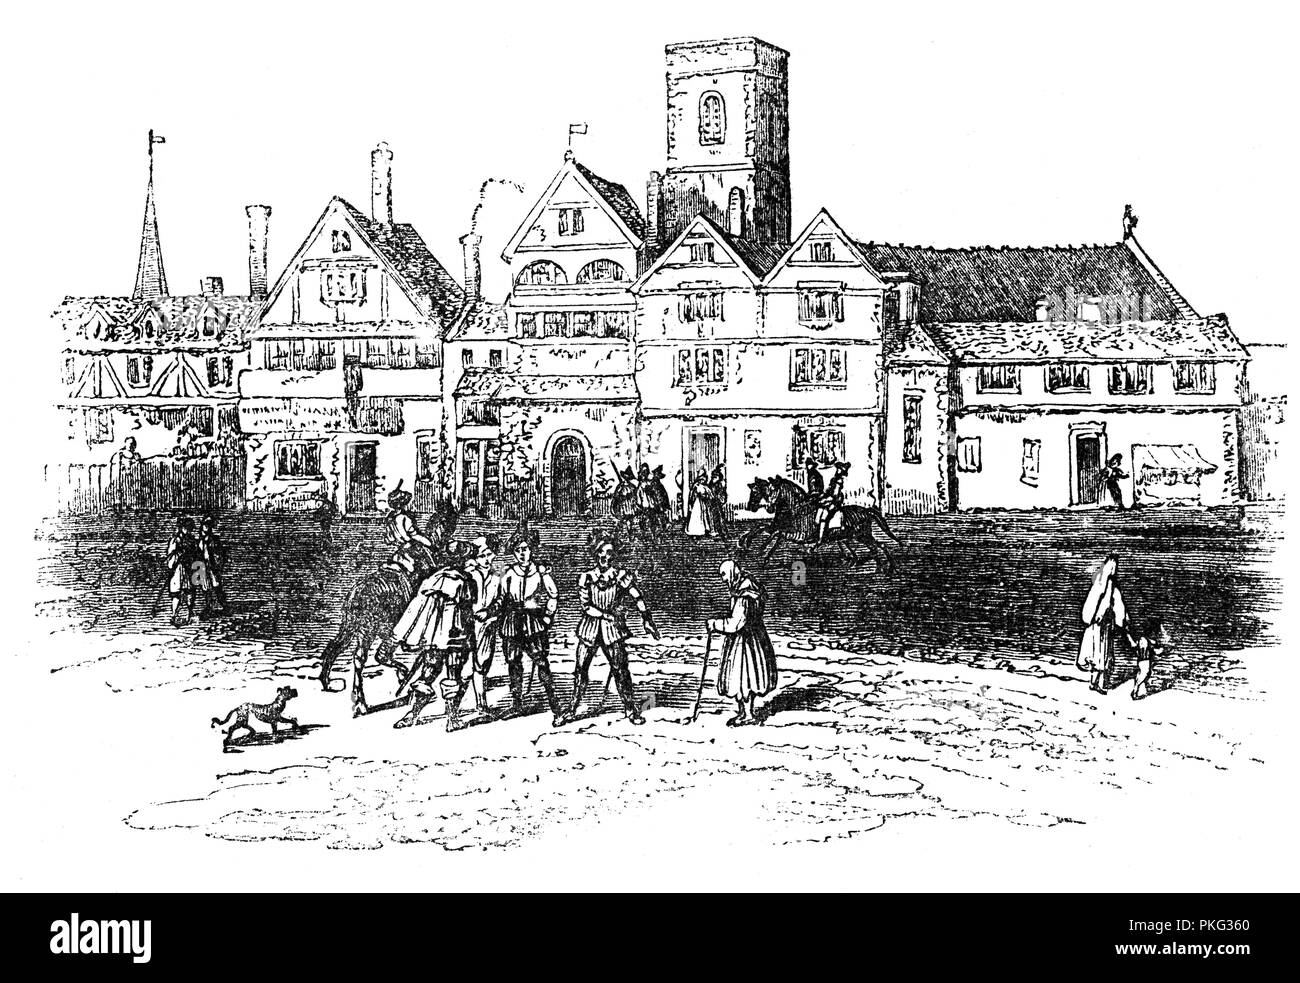 L'Elms, ex esecuzione pubblica sito in Smithfield, città di Londra, in Inghilterra, dove insieme a Tyburn, è stato il principale sito per l' esecuzione pubblica di eretici e dissidenti come nobile scozzese Sir William Wallace e Wat Tyler, fu ucciso da Sir William Walworth, Sindaco di Londra il 15 giugno 1381. Una cinquantina di protestanti e riformatori religiosi, noto come martiri mariana, sono stati eseguiti a Smithfield durante il regno di Maria I. carne è stato scambiato a Smithfield Market per più di 800 anni, il che lo rende uno dei più antichi mercati di Londra. Foto Stock